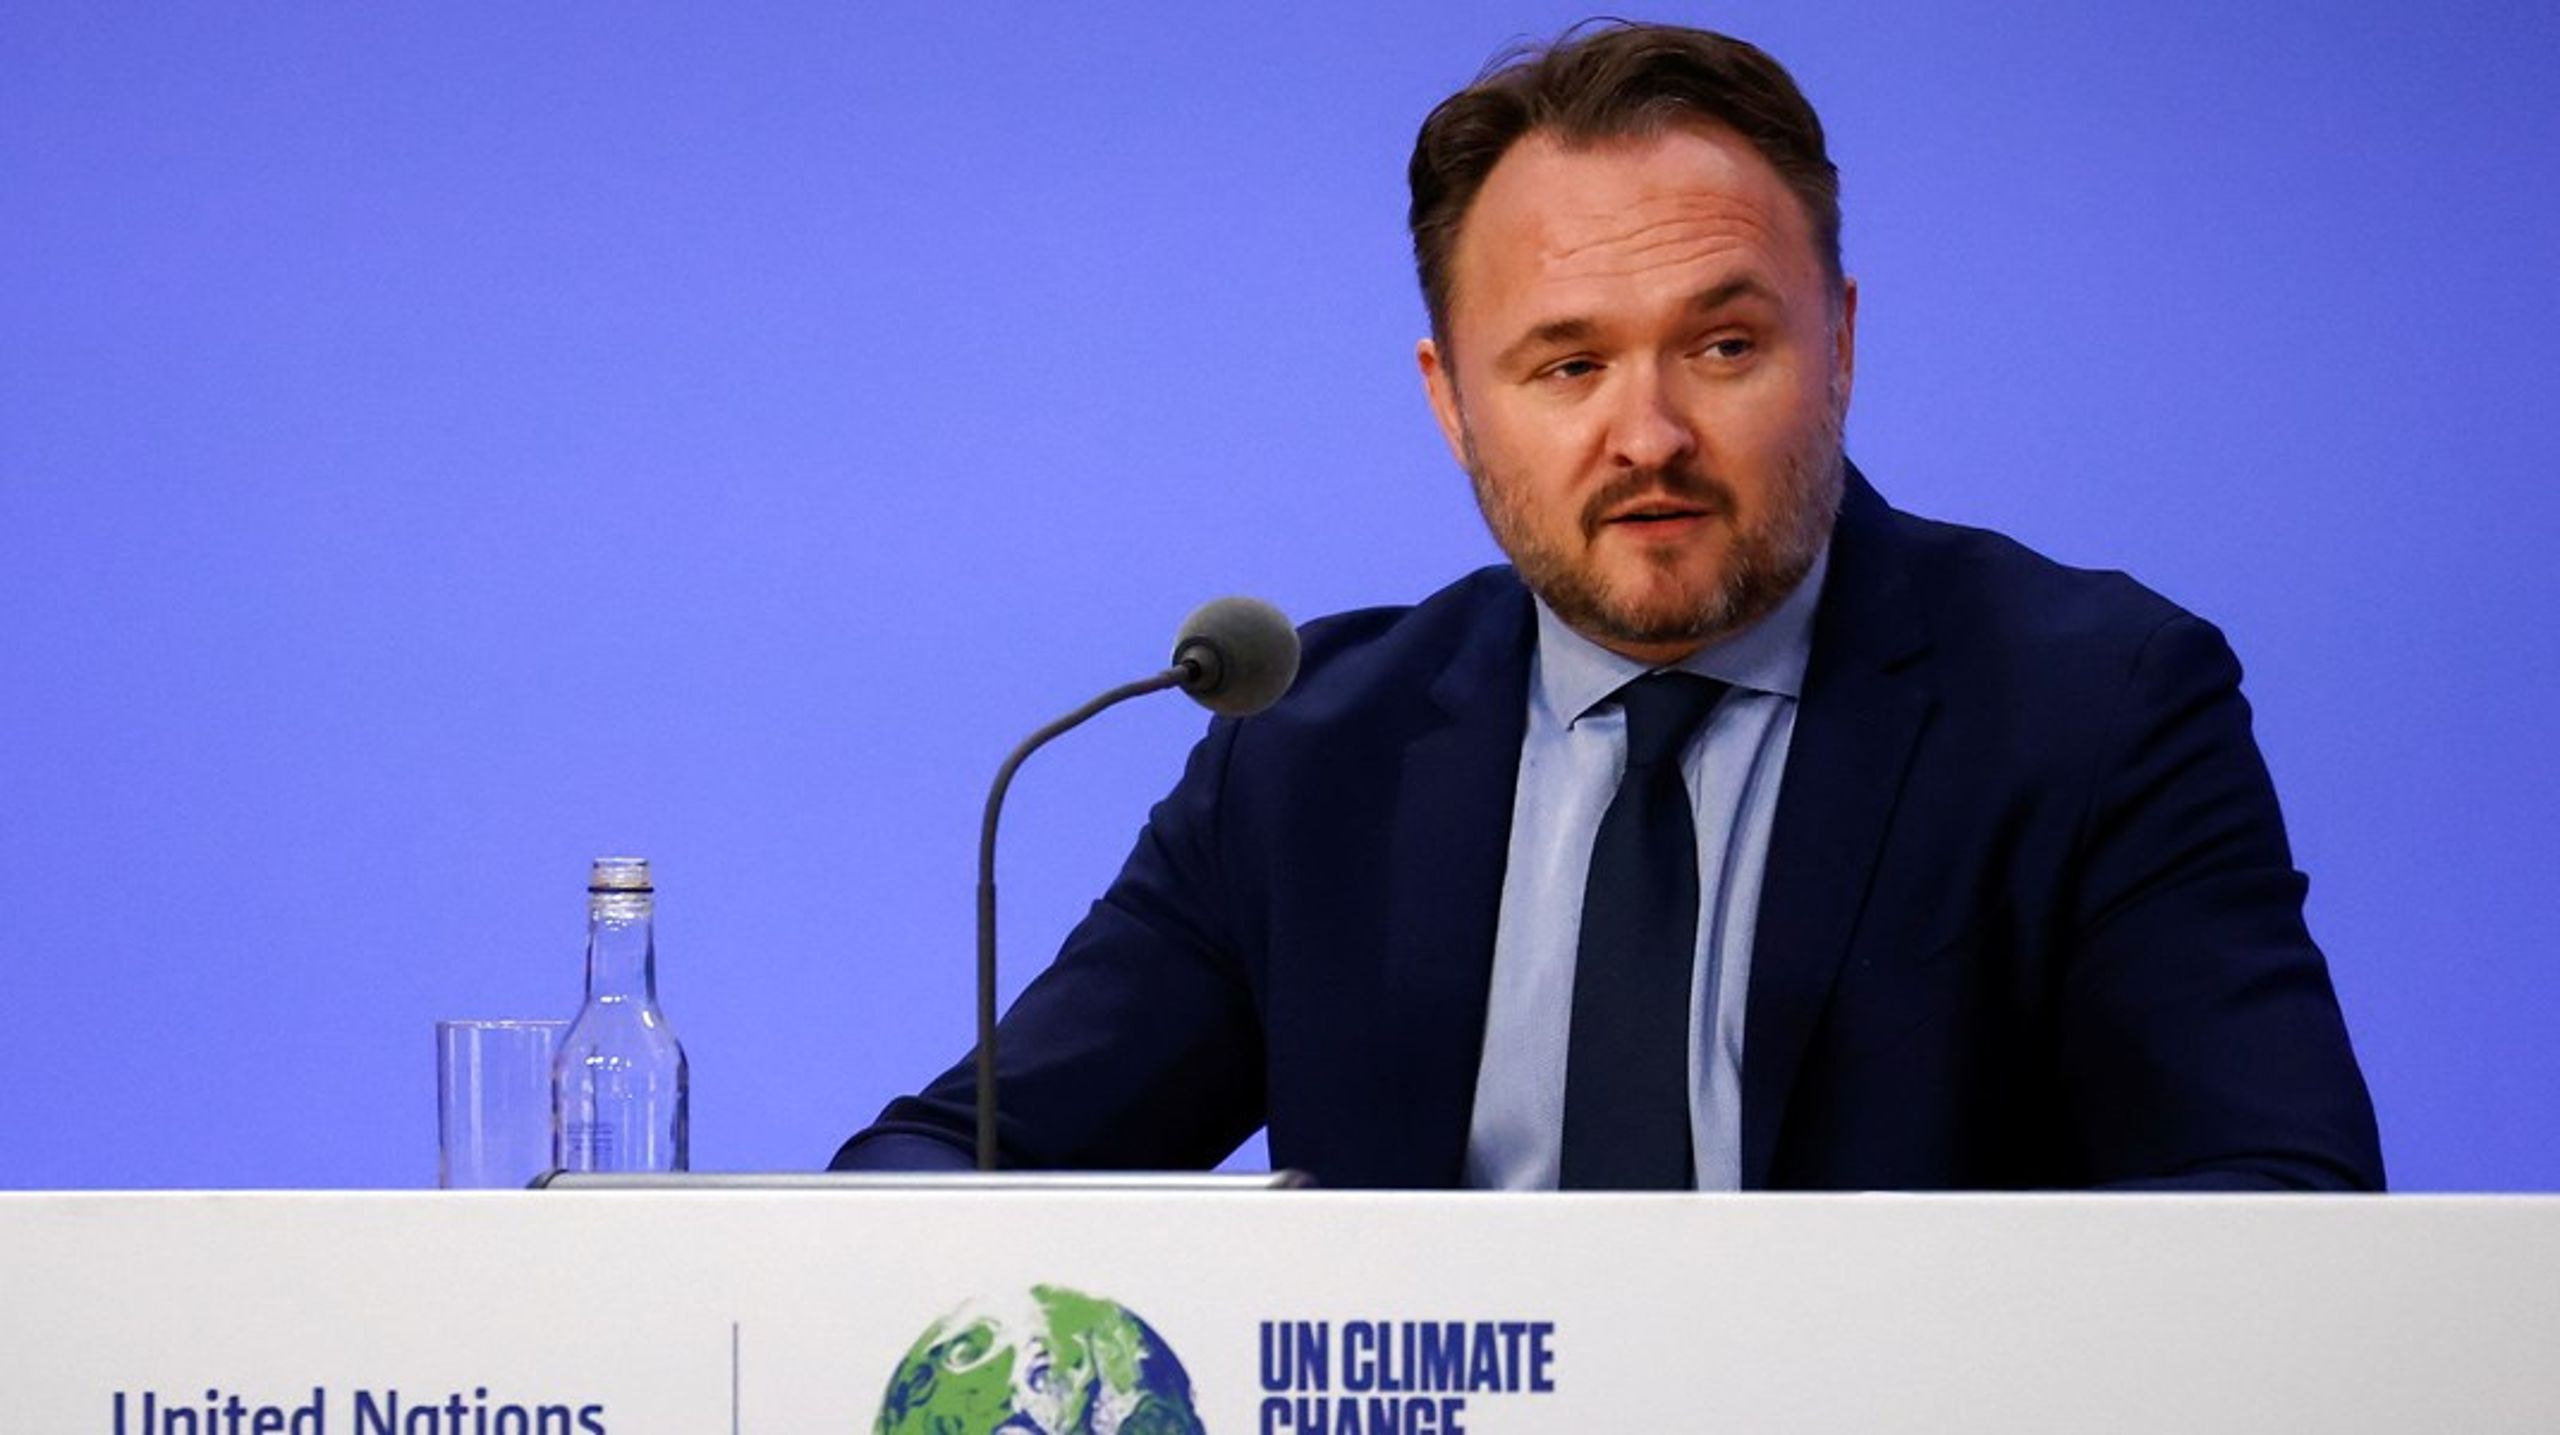 Danmark og resten af verden skal blive grønnere for at forhindre klimakatastrofen, skriver Dan Jørgensen.<br><br>